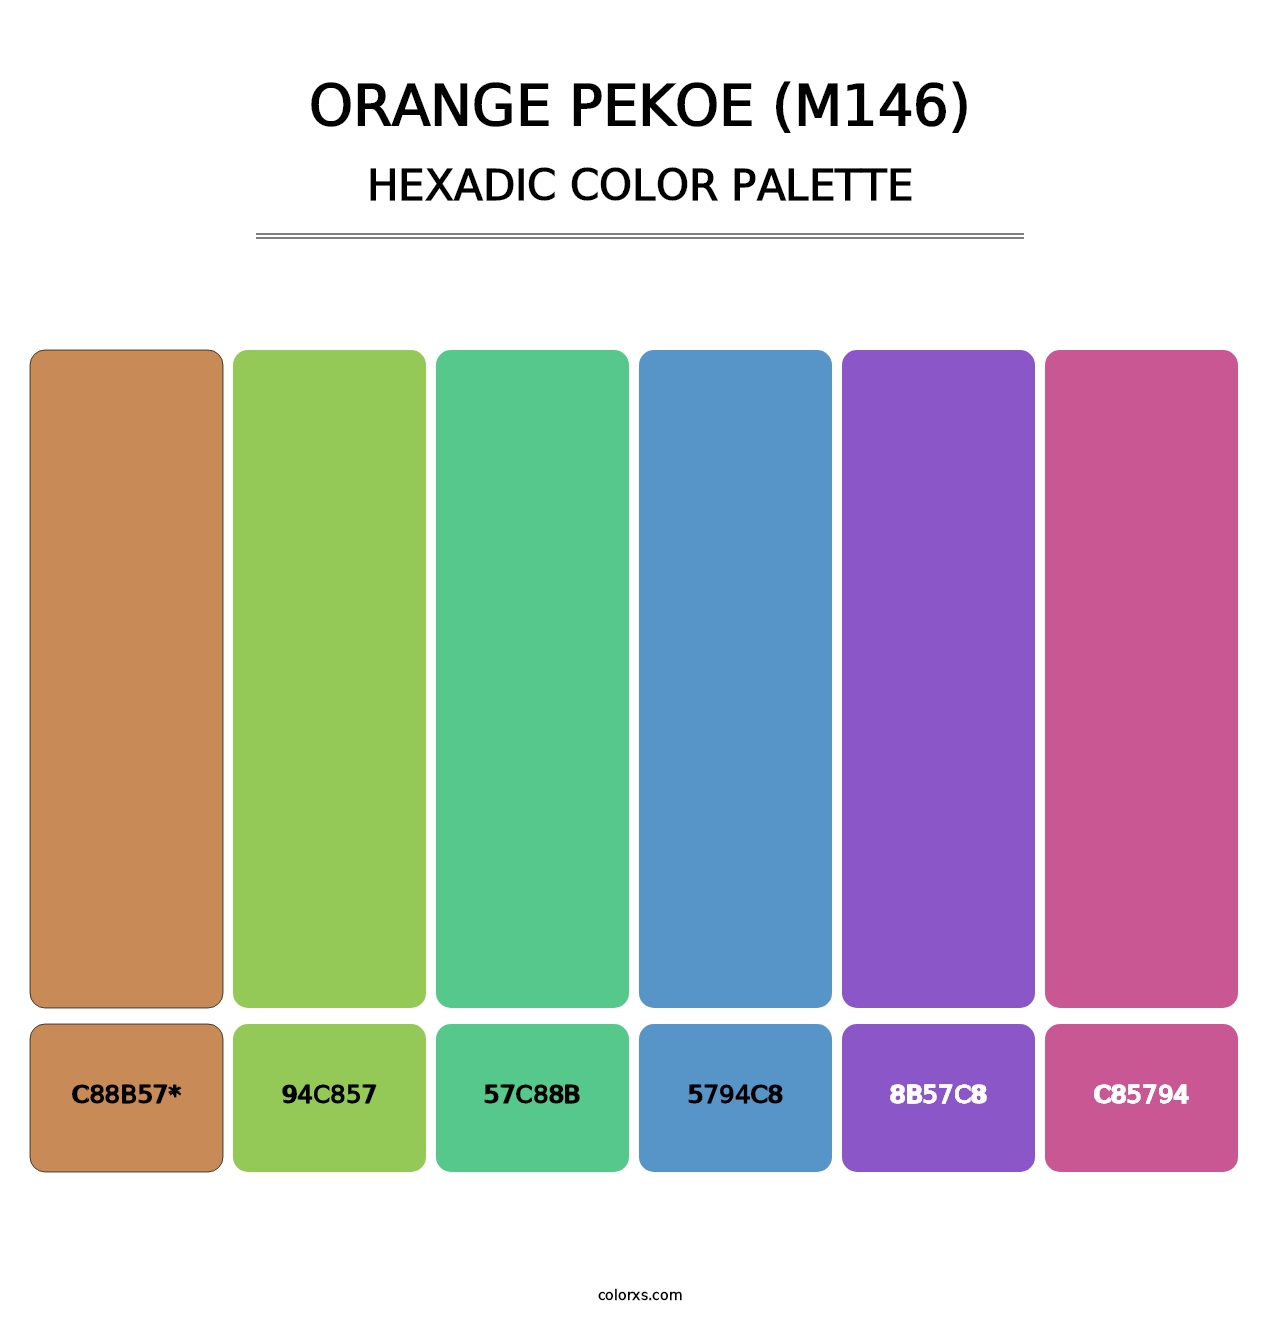 Orange Pekoe (M146) - Hexadic Color Palette